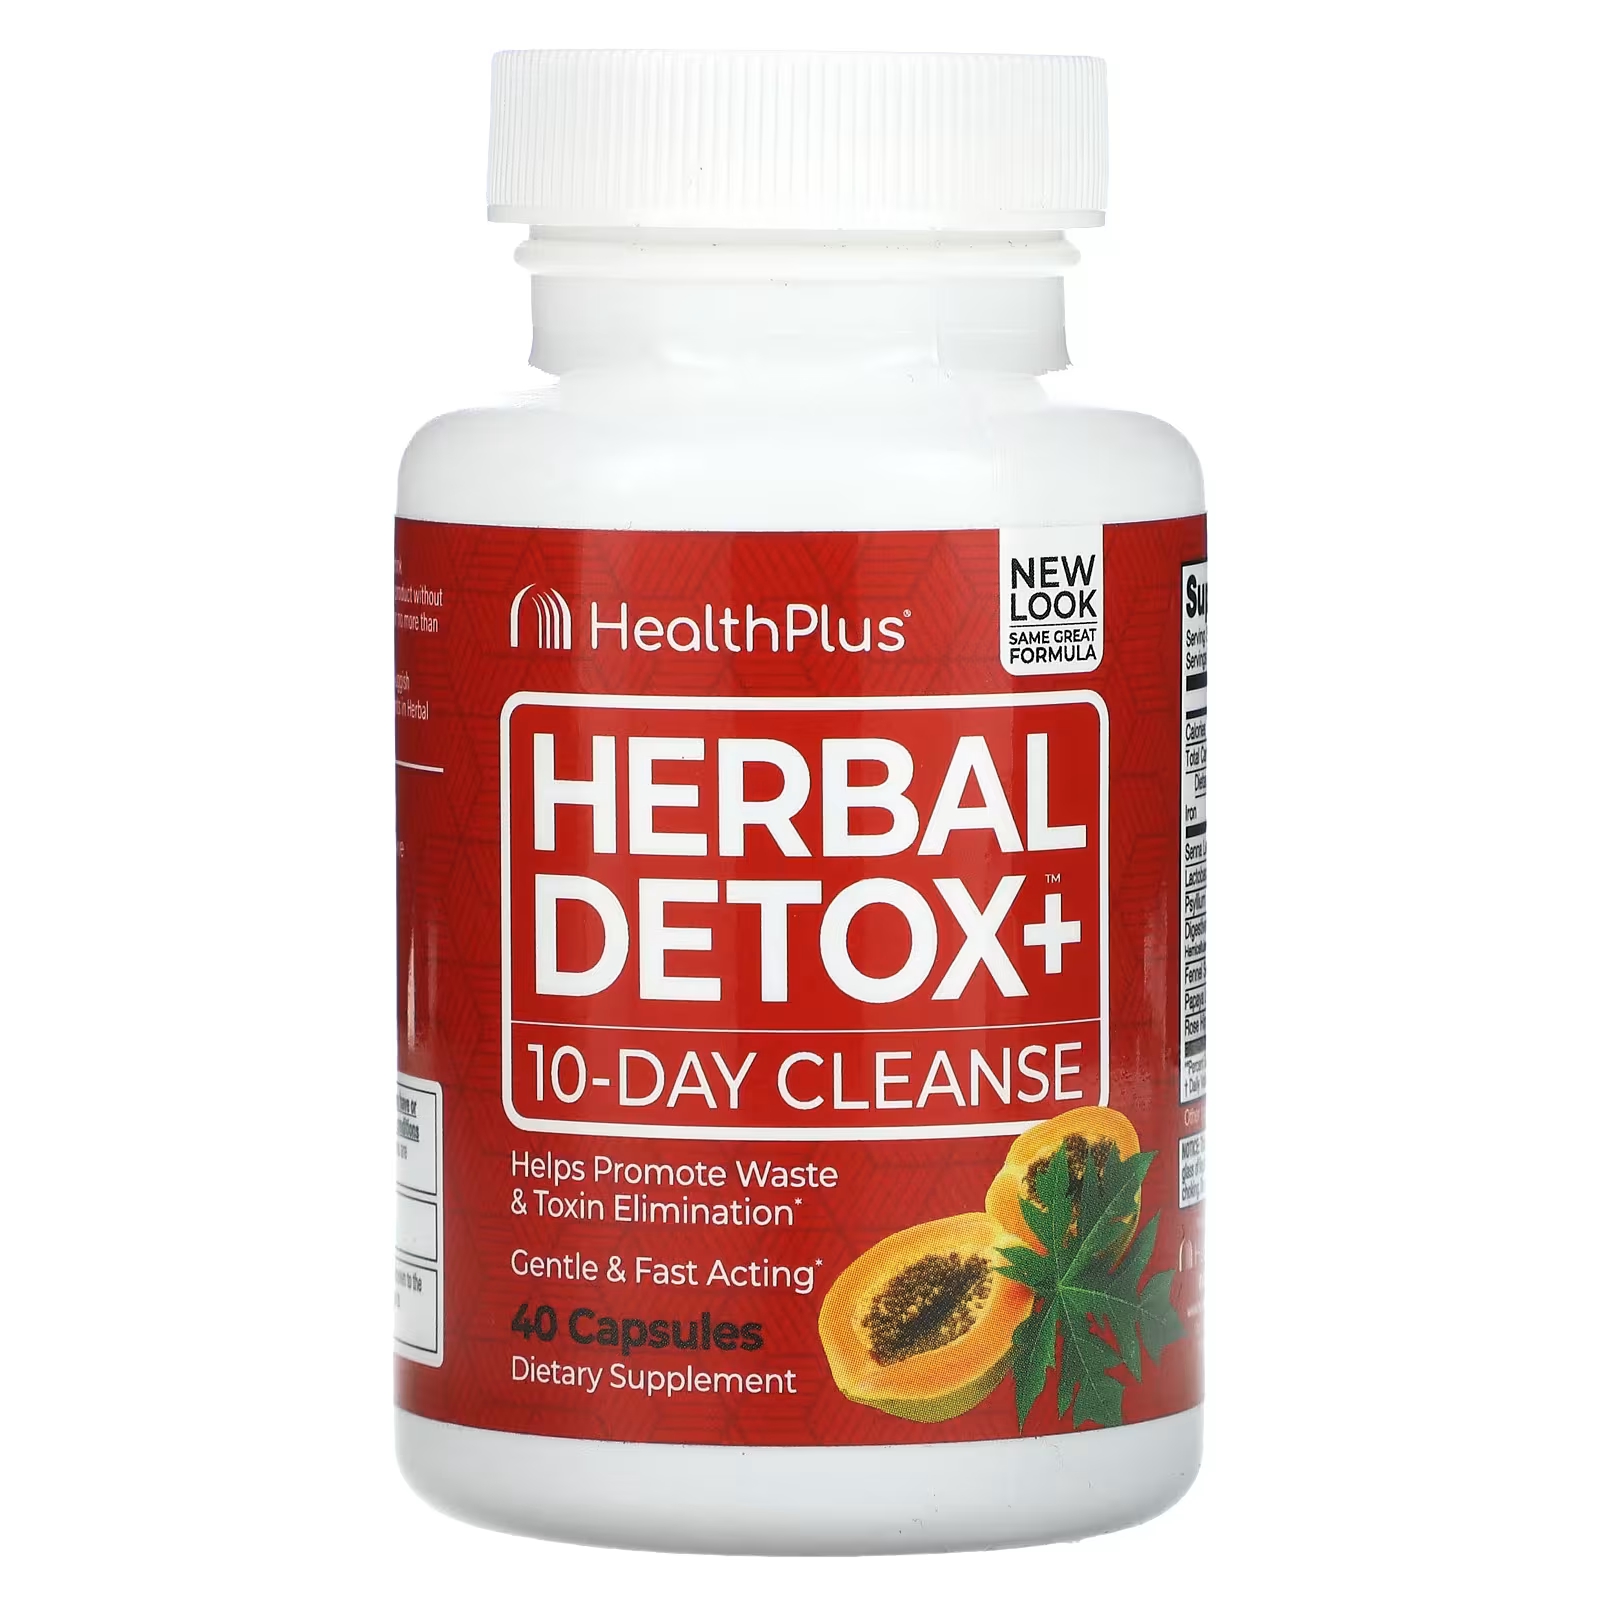 Health Plus Inc. Herbal Detox+ 10-дневное очищение, 40 капсул